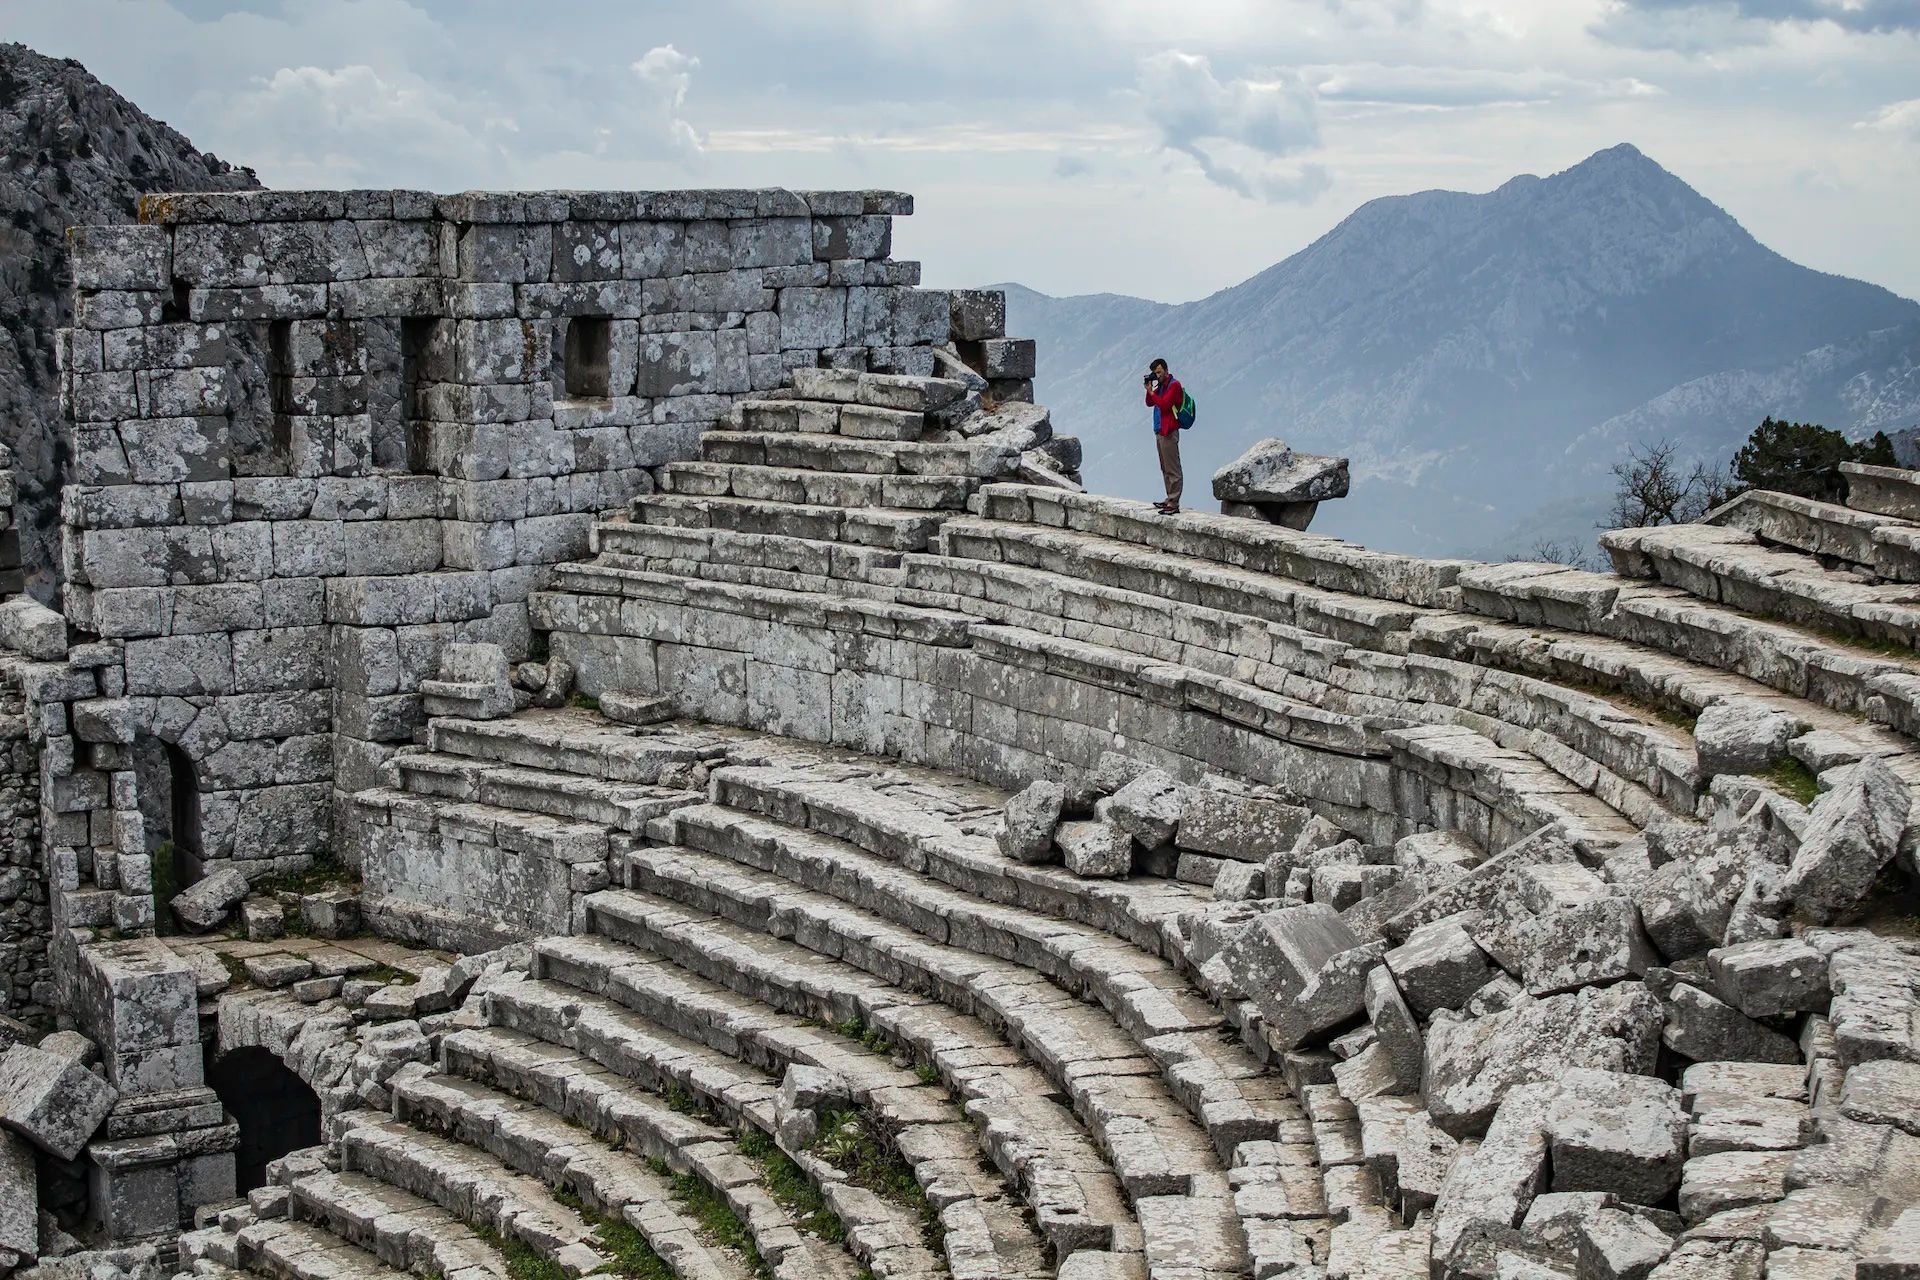 L'anfiteatro di Termessos, nel cuore del Parco nazionale del Monte Güllük-Termessos, in Turchia.